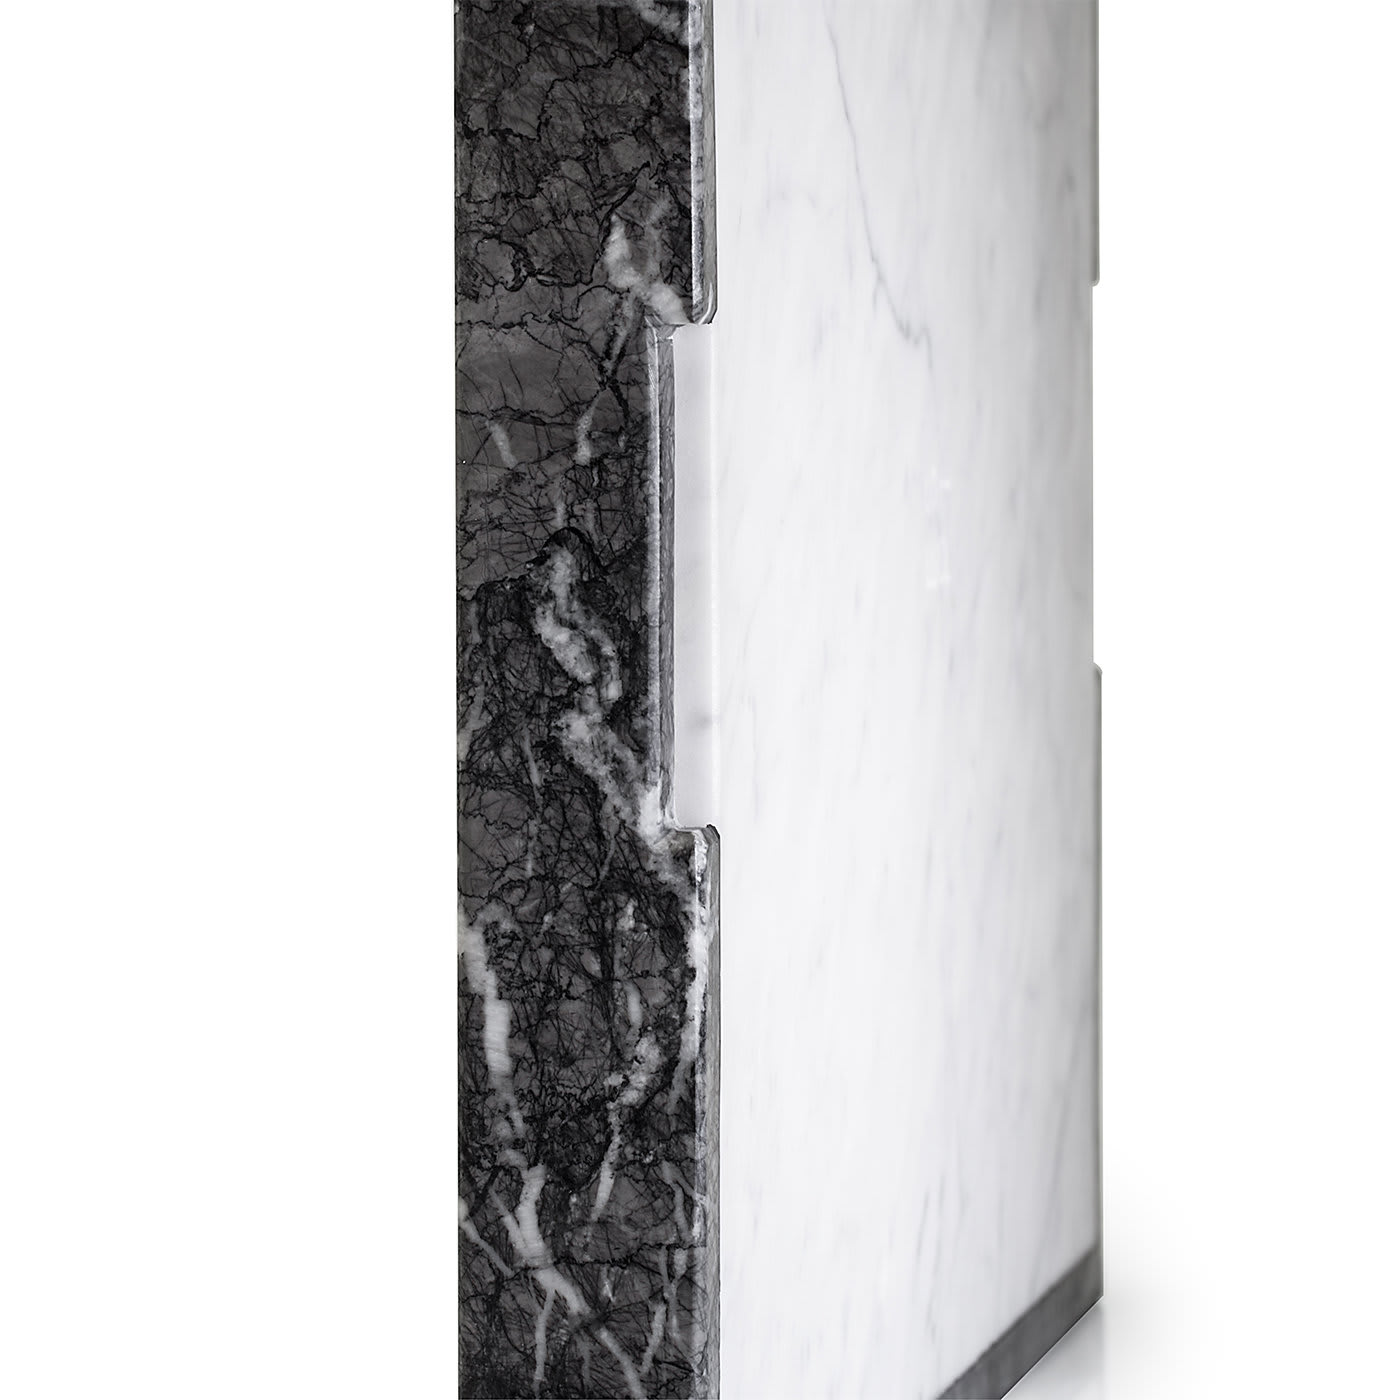 Convivio Maxi Solid Tray in Grey Carnico and White Carrara Marbles - Espidesign by Paola Speranza